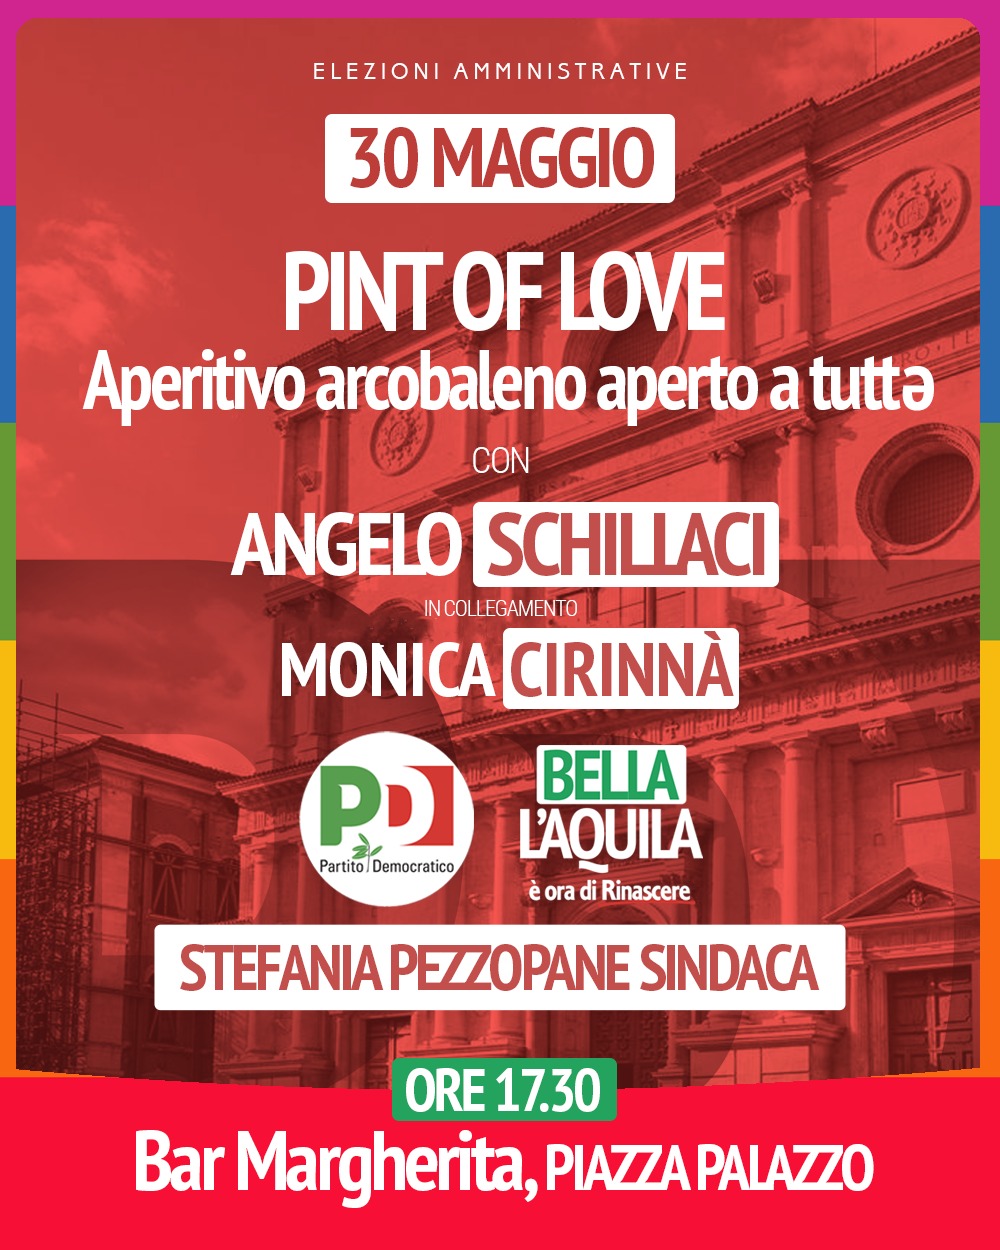 “Pint of Love”: il 30 maggio aperitivo arcobaleno con Angelo Schillaci e Monica Cirinnà